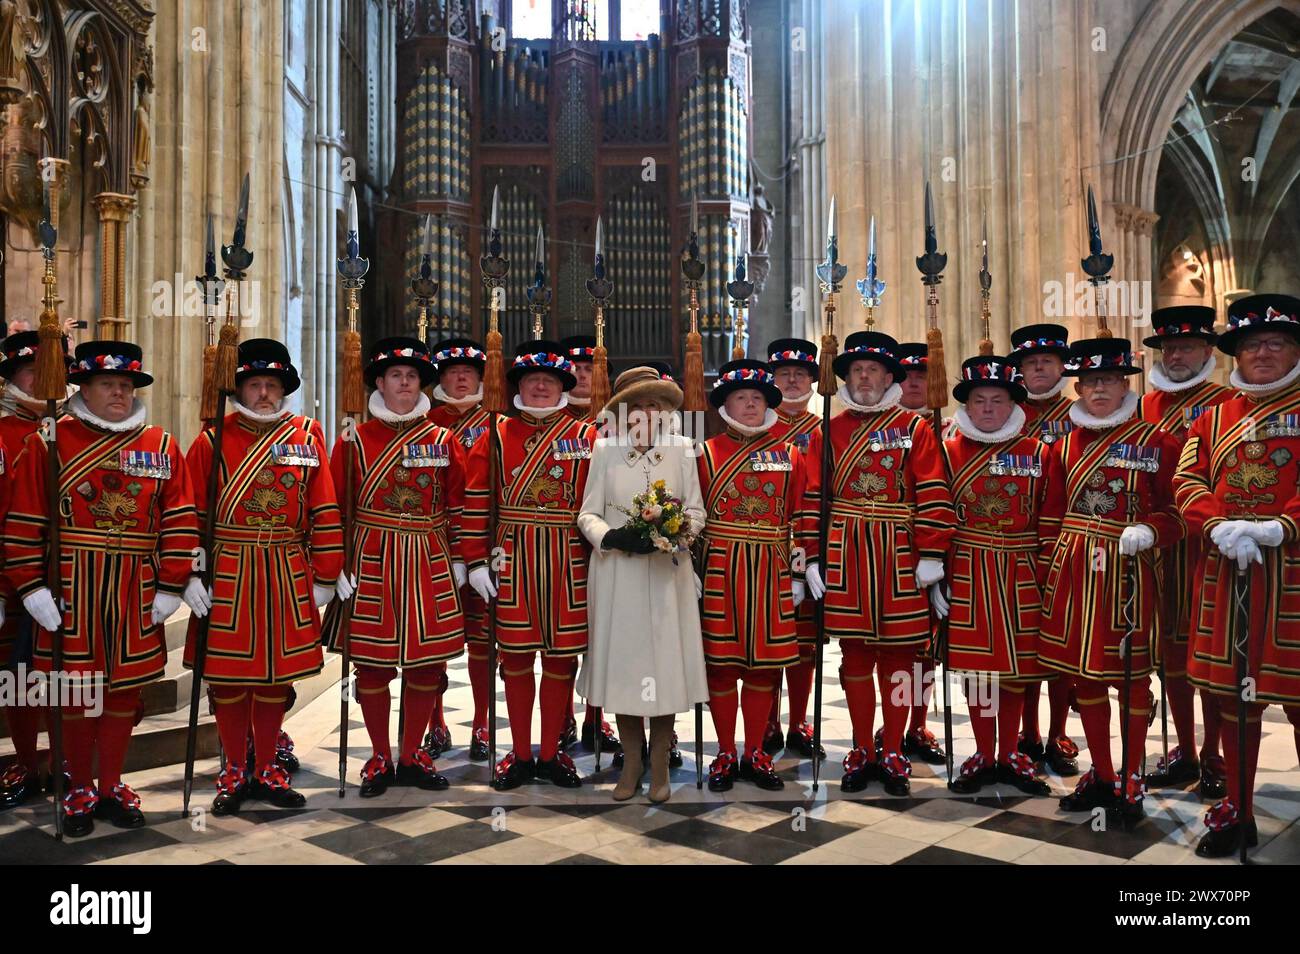 Königin Camilla hält einen Nasenstrauß, während sie für ein Foto mit dem Yeomen der Garde während des Royal Maundy Service in der Worcester Cathedral posiert. Bilddatum: Donnerstag, 28. März 2024. Stockfoto